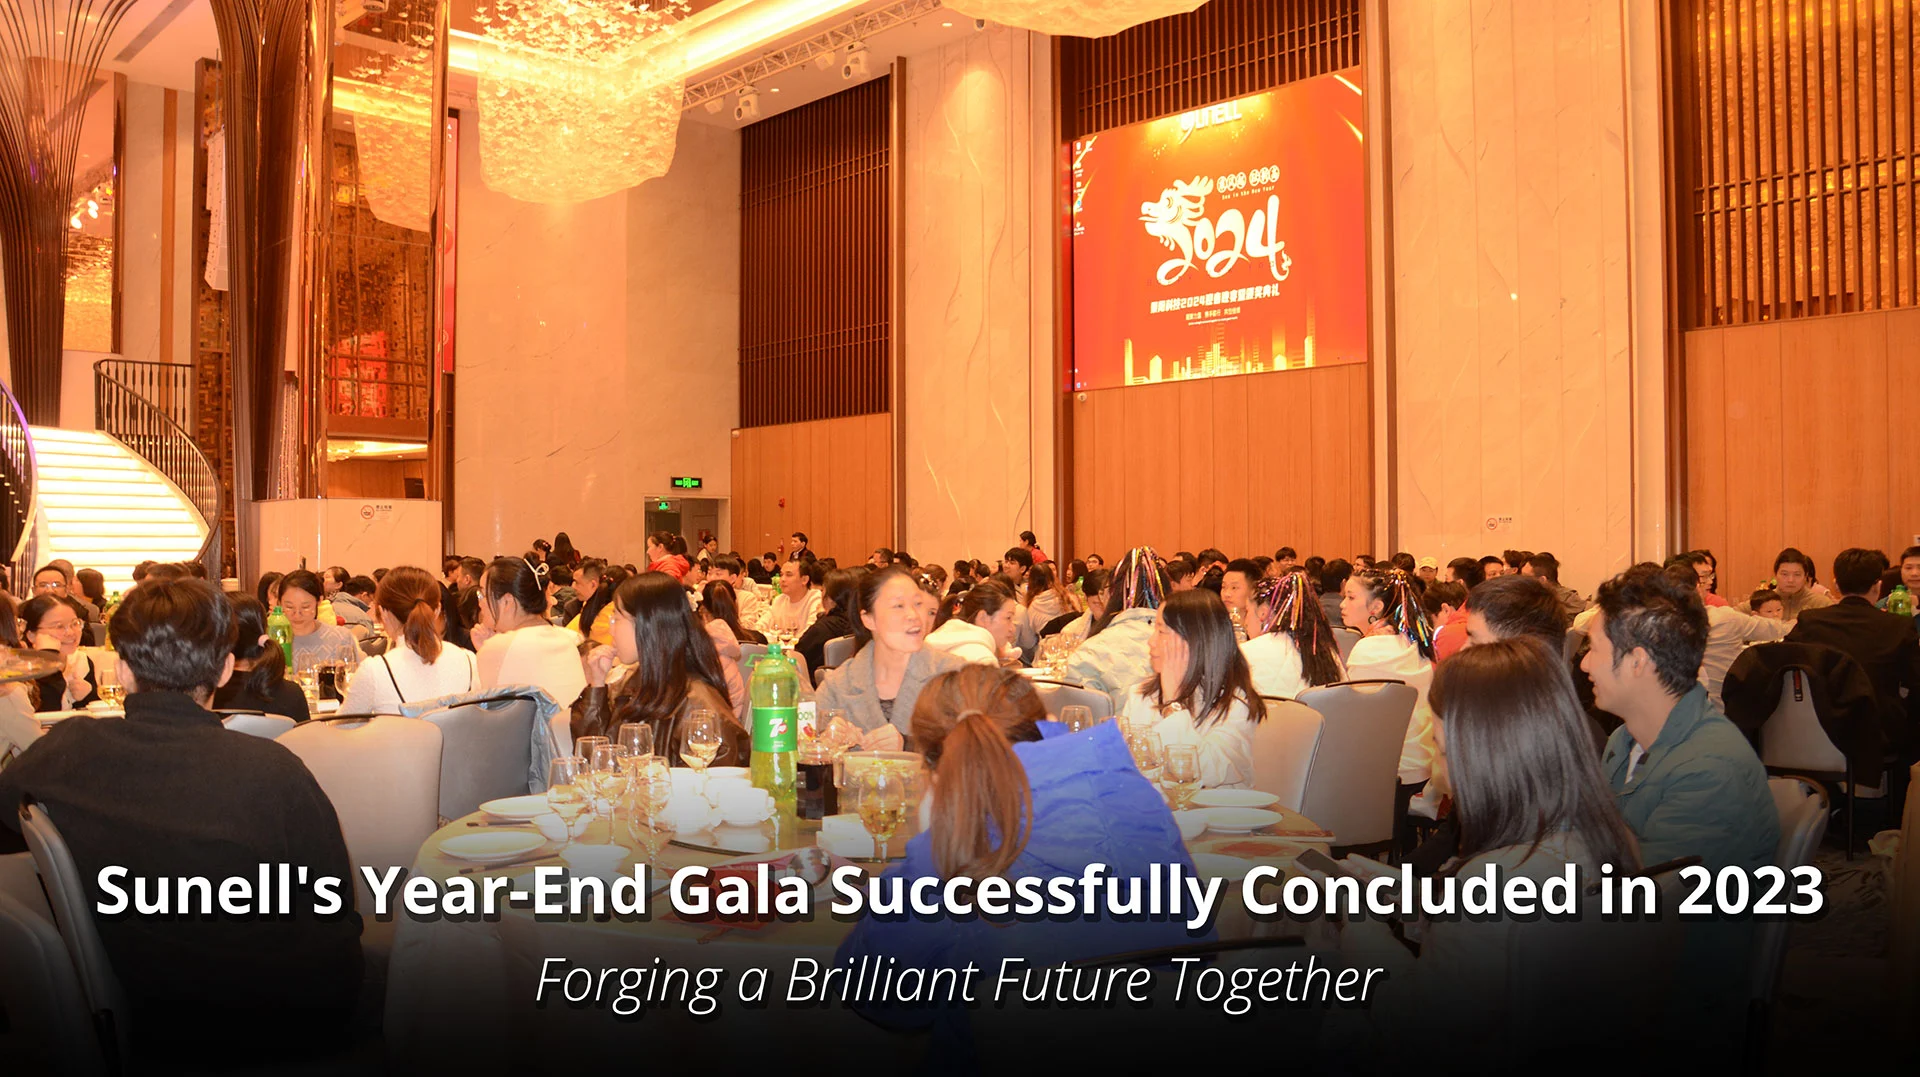 A gala de fim de ano de Sunell terminou com sucesso em 2023, forjando um futuro brilhante juntos